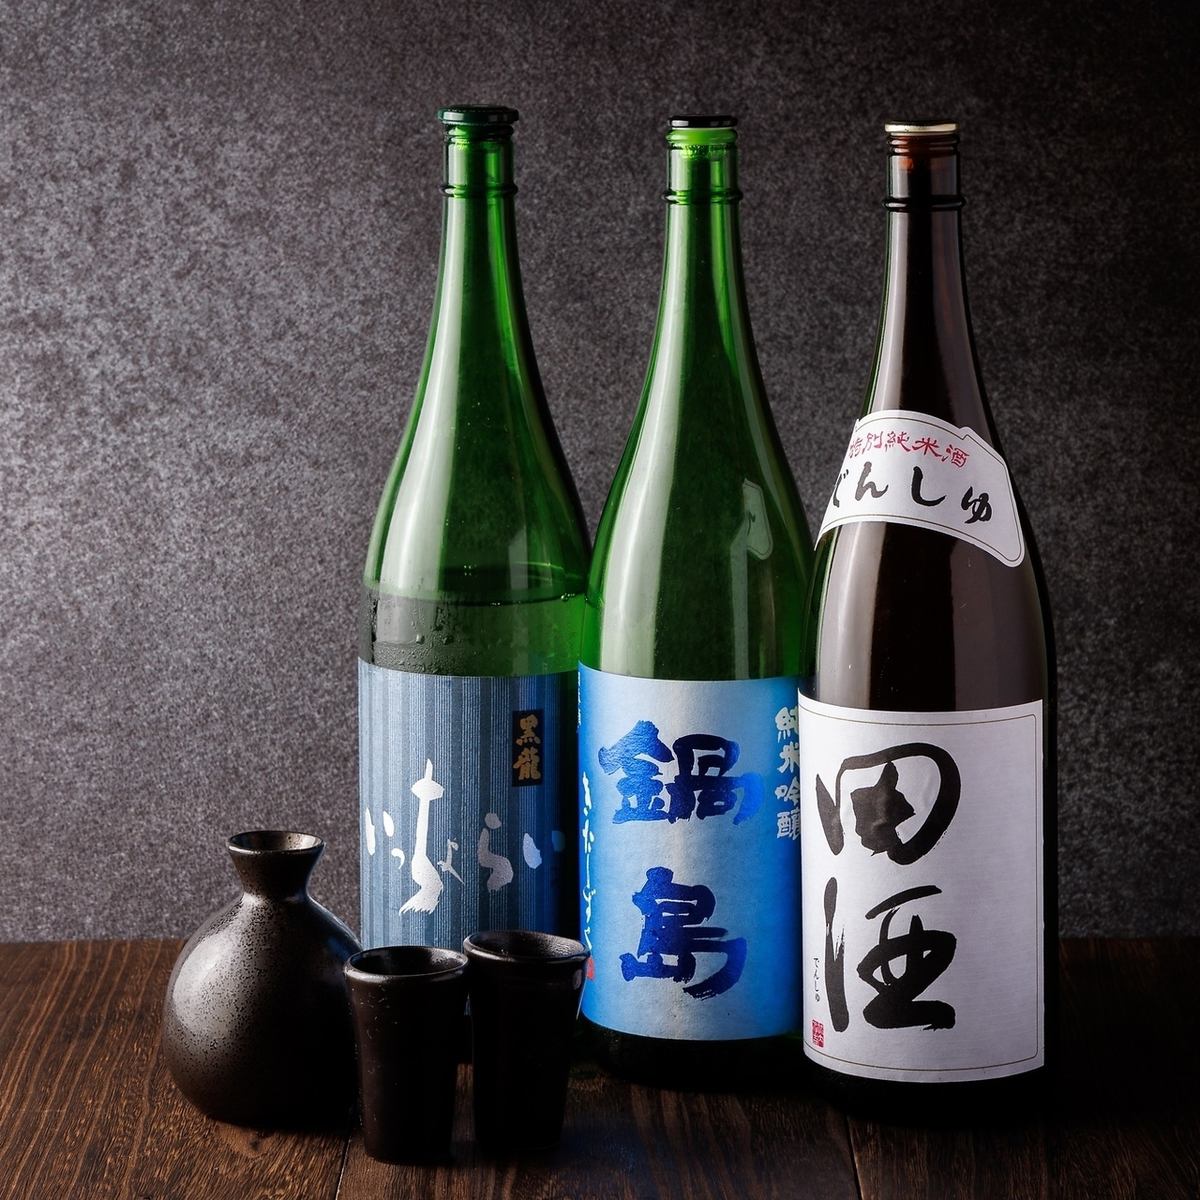 我们提供各种精心挑选的日本酒。